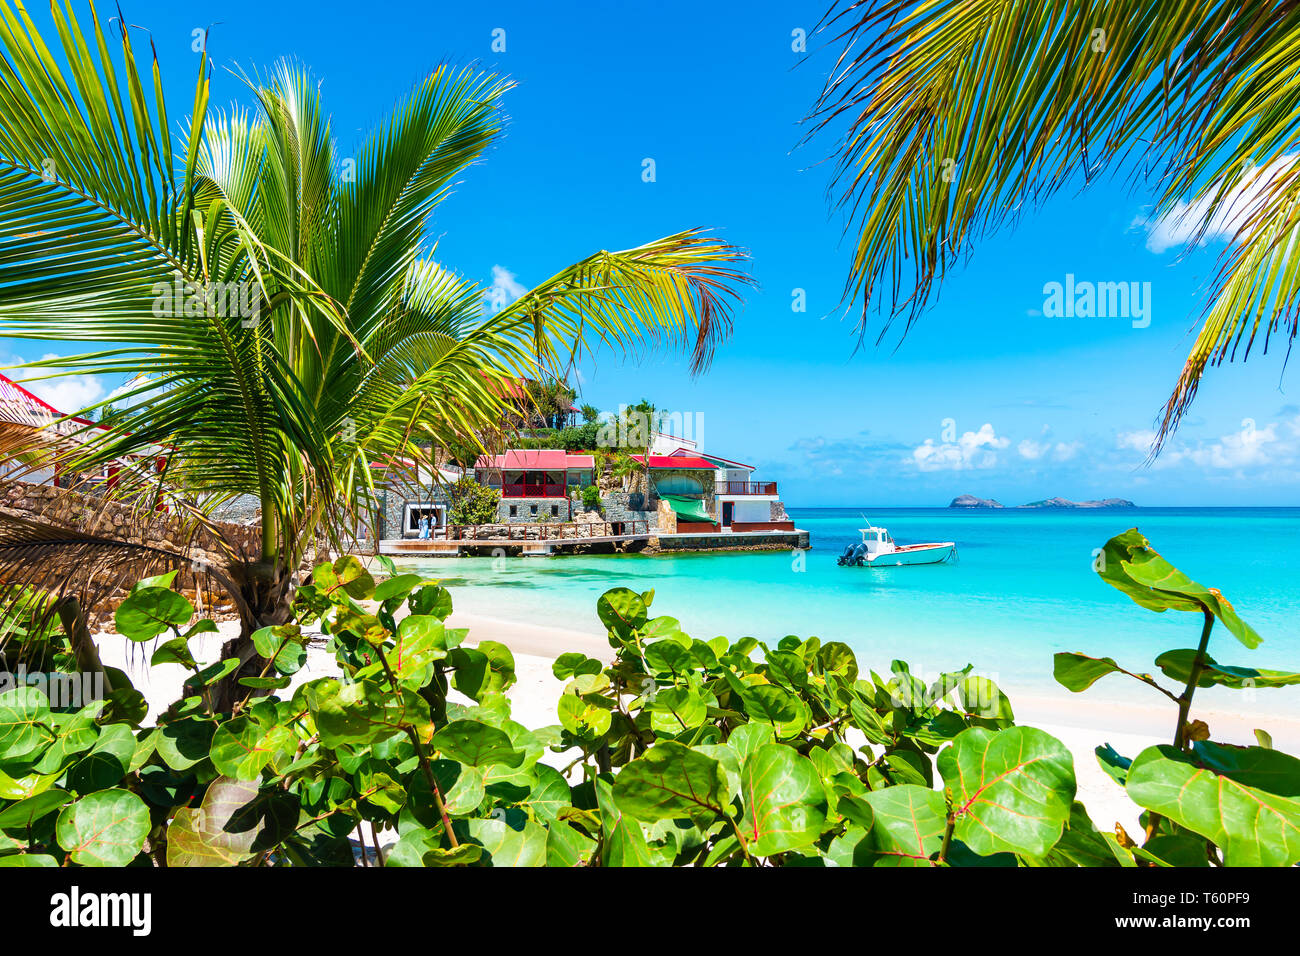 Palmiers sur la plage tropicale, St Barth, l'île des Caraïbes. Banque D'Images